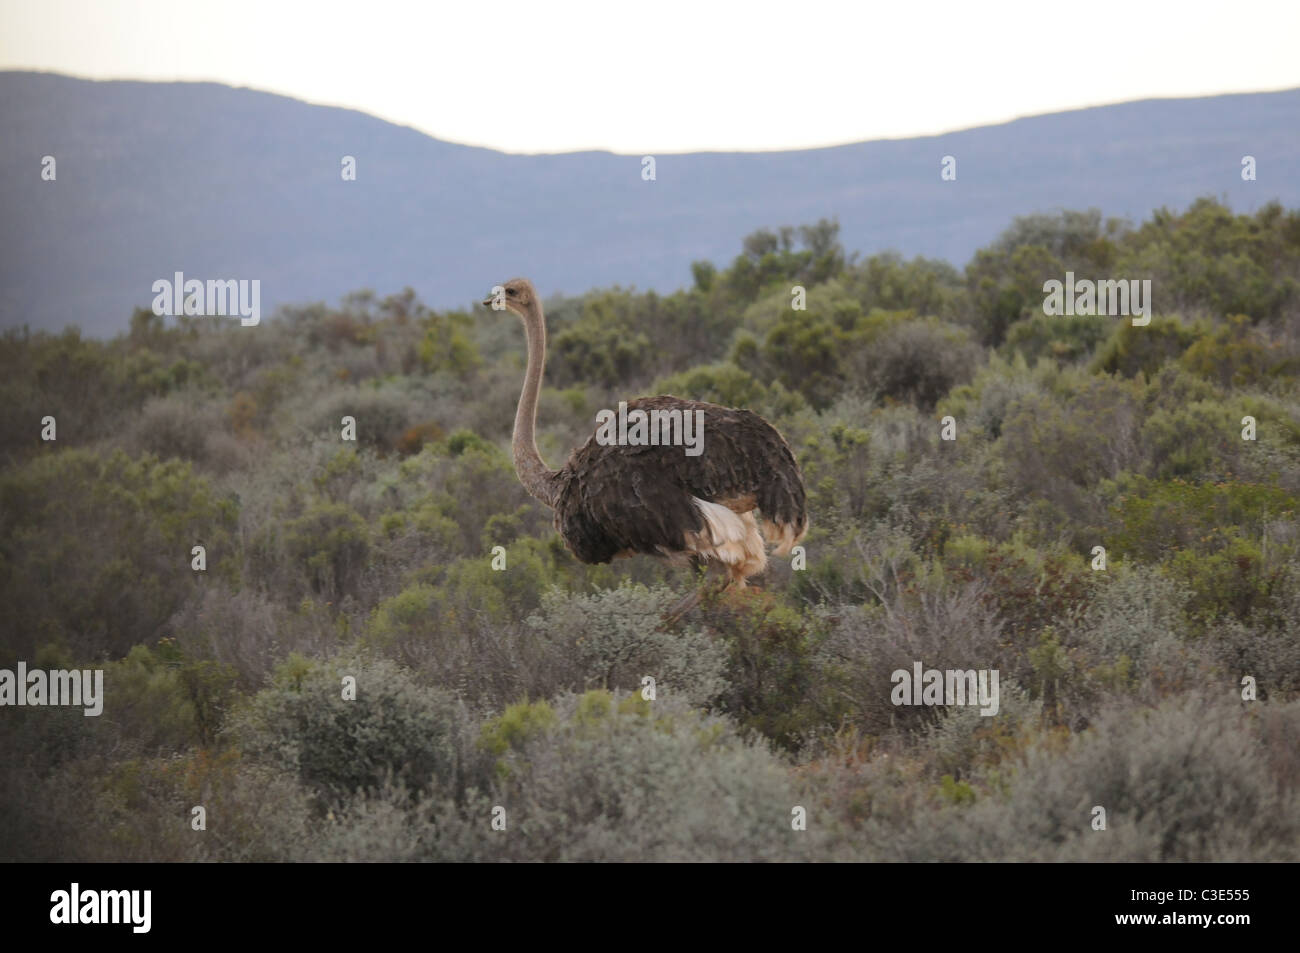 Ostrich in semi-desert, Stock Photo